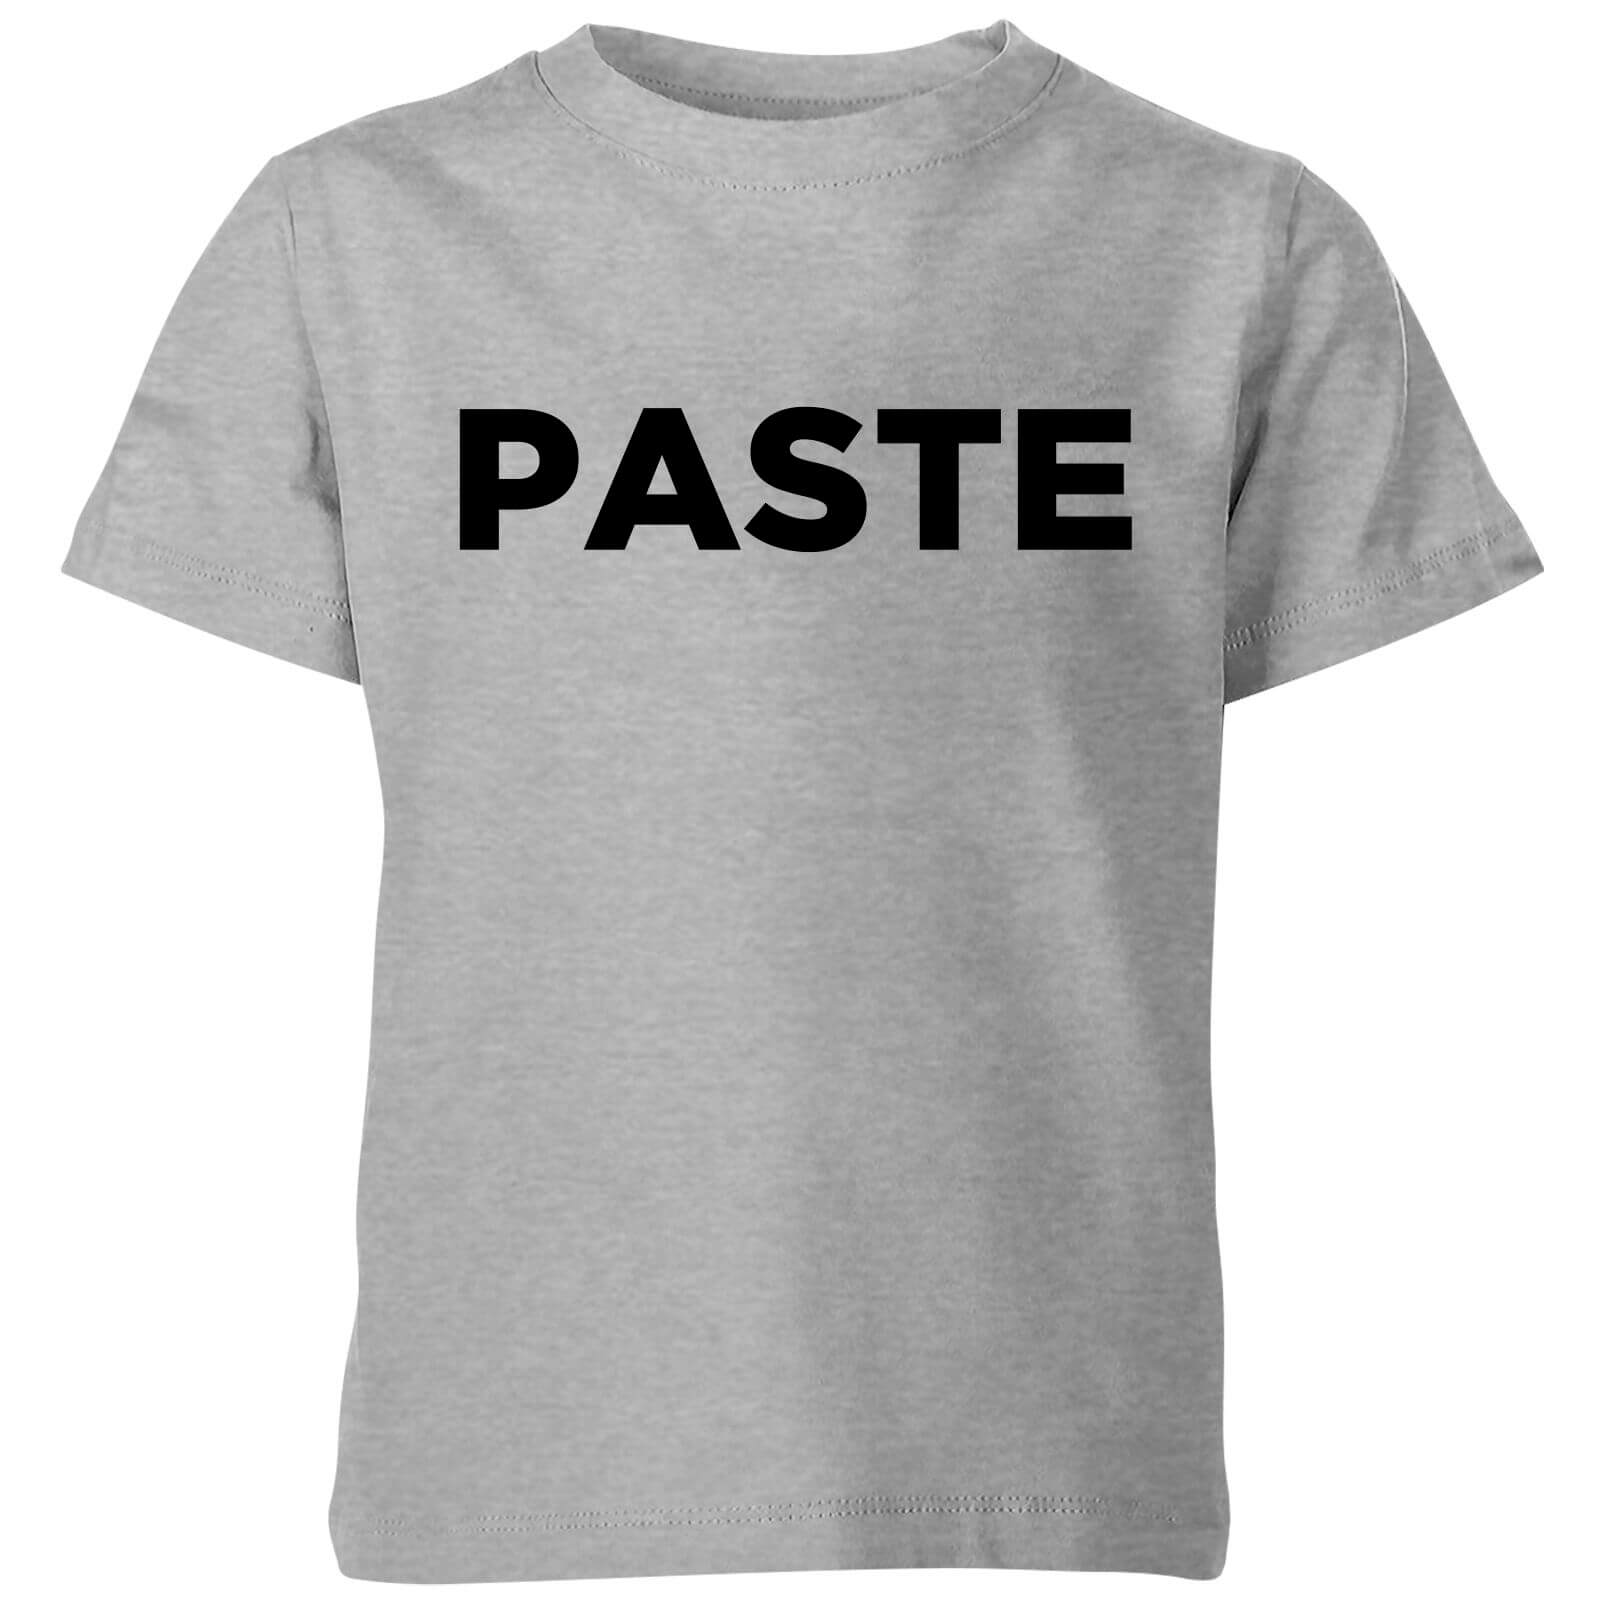 Paste Kids' T-Shirt - Grey - 3-4 Years - Grey